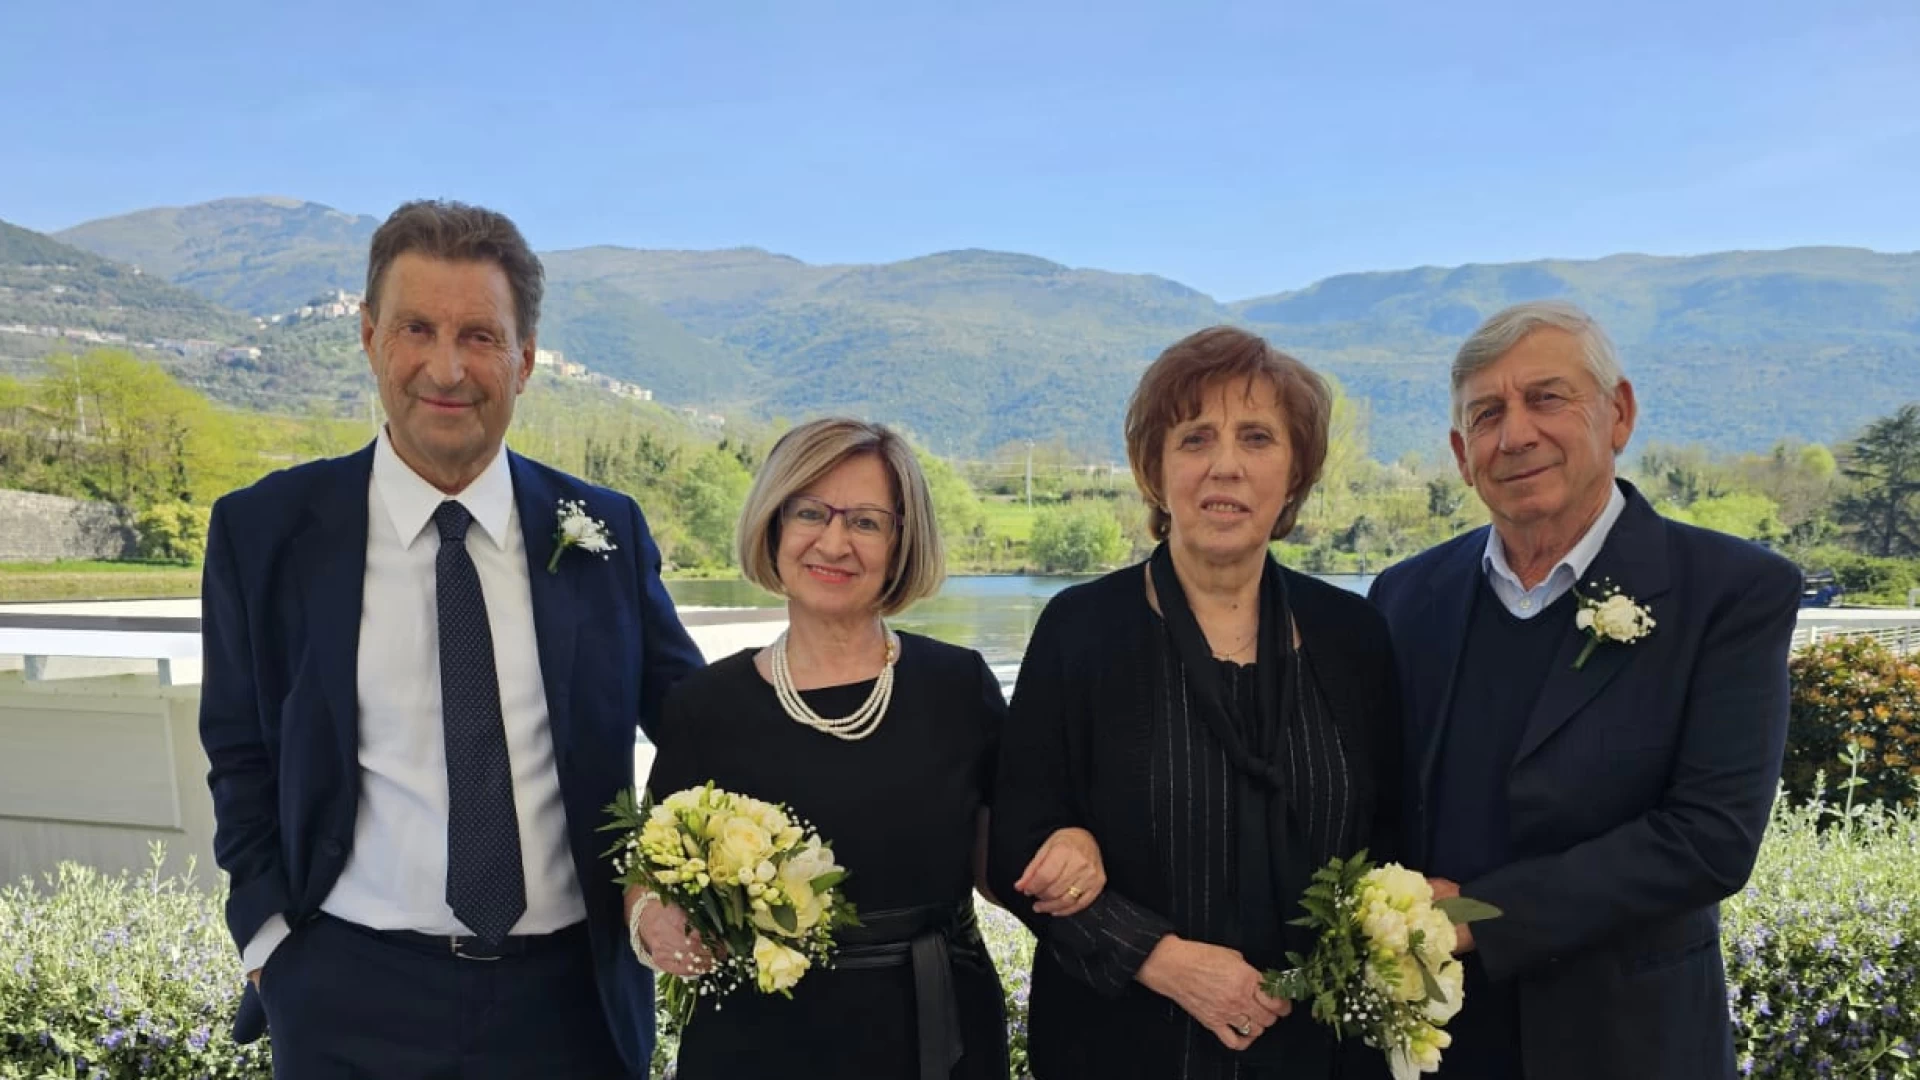 L'Angolo degli Auguri di oggi dedicato alle nozze d'oro di Antonio di Pasquale , Gaetanina Scarselli, Mario Vacca e Assunta Di Pasquale.